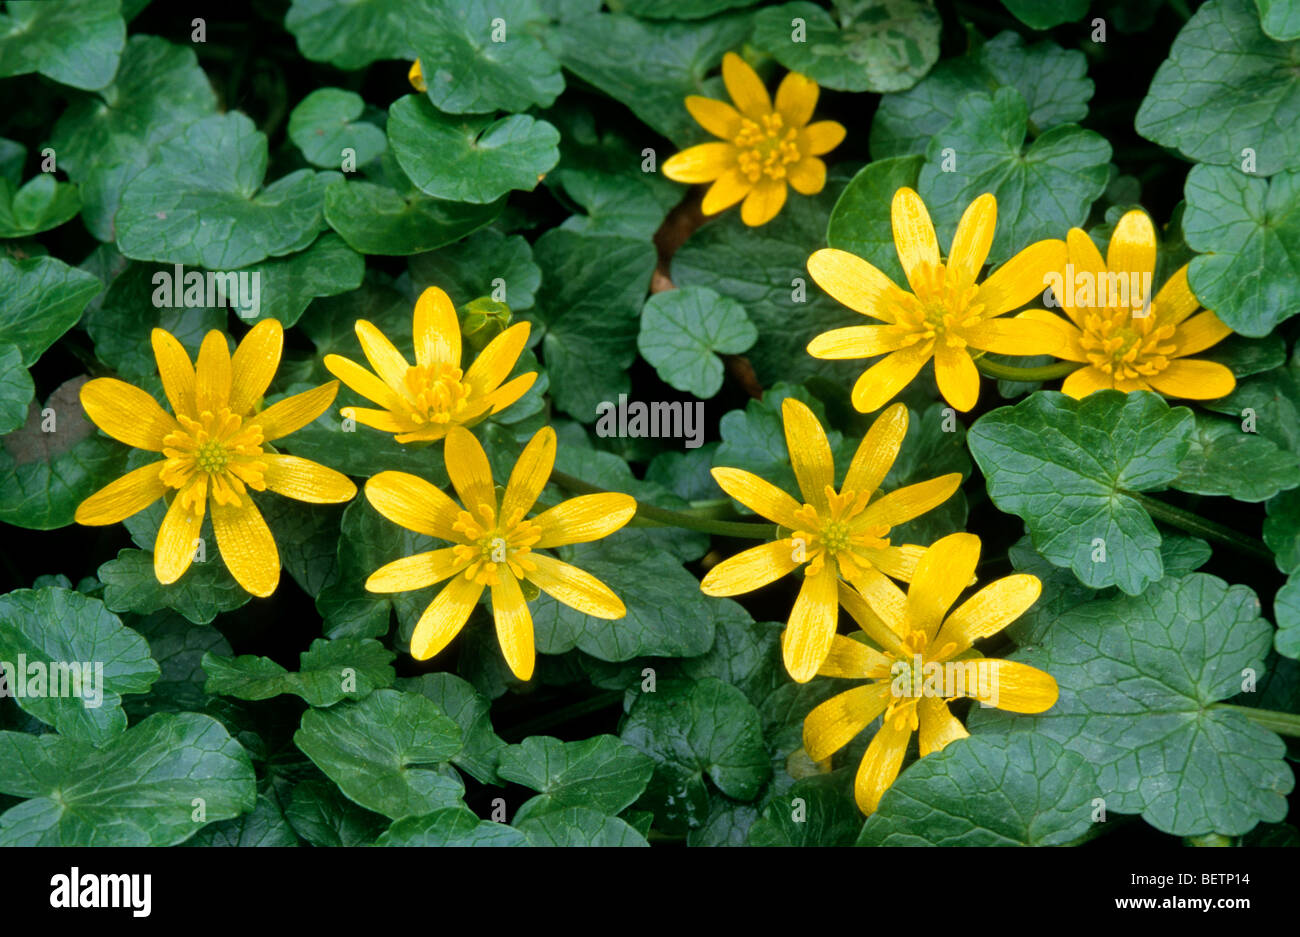 Lesser celandine / Pilewort (Ranunculus ficaria subsp. bulbilifer / Ficaria verna subsp. bulbifer) in flower Stock Photo